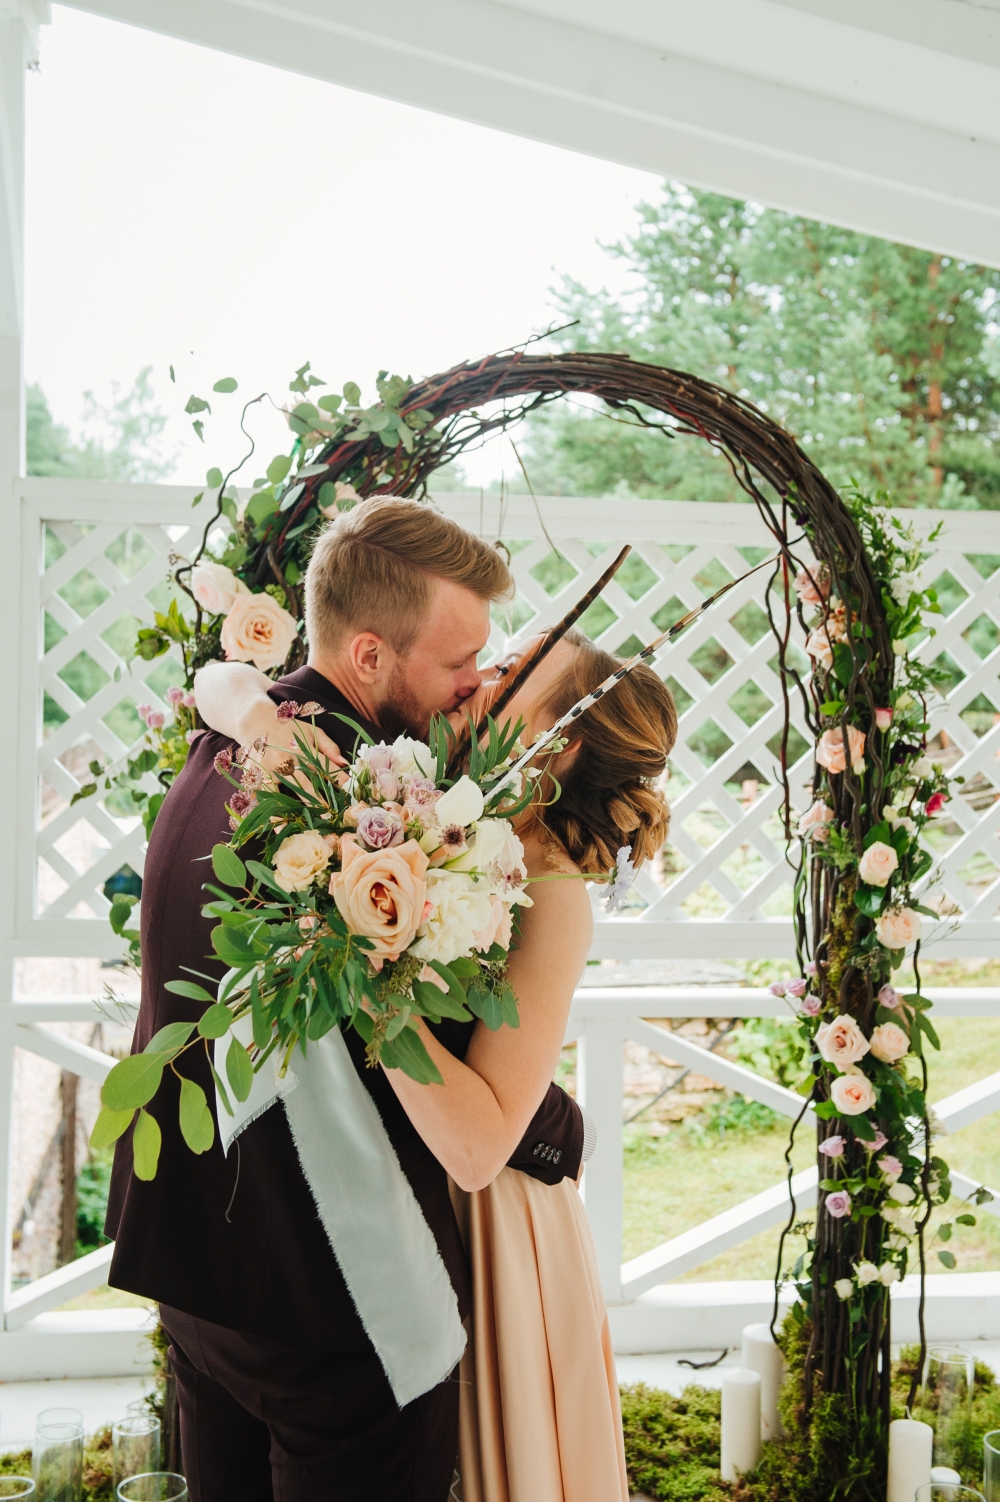 Арка для свадебной церемонии и букет невесты в стиле бохо, с перьями, ловцами снов и пионовидными розами